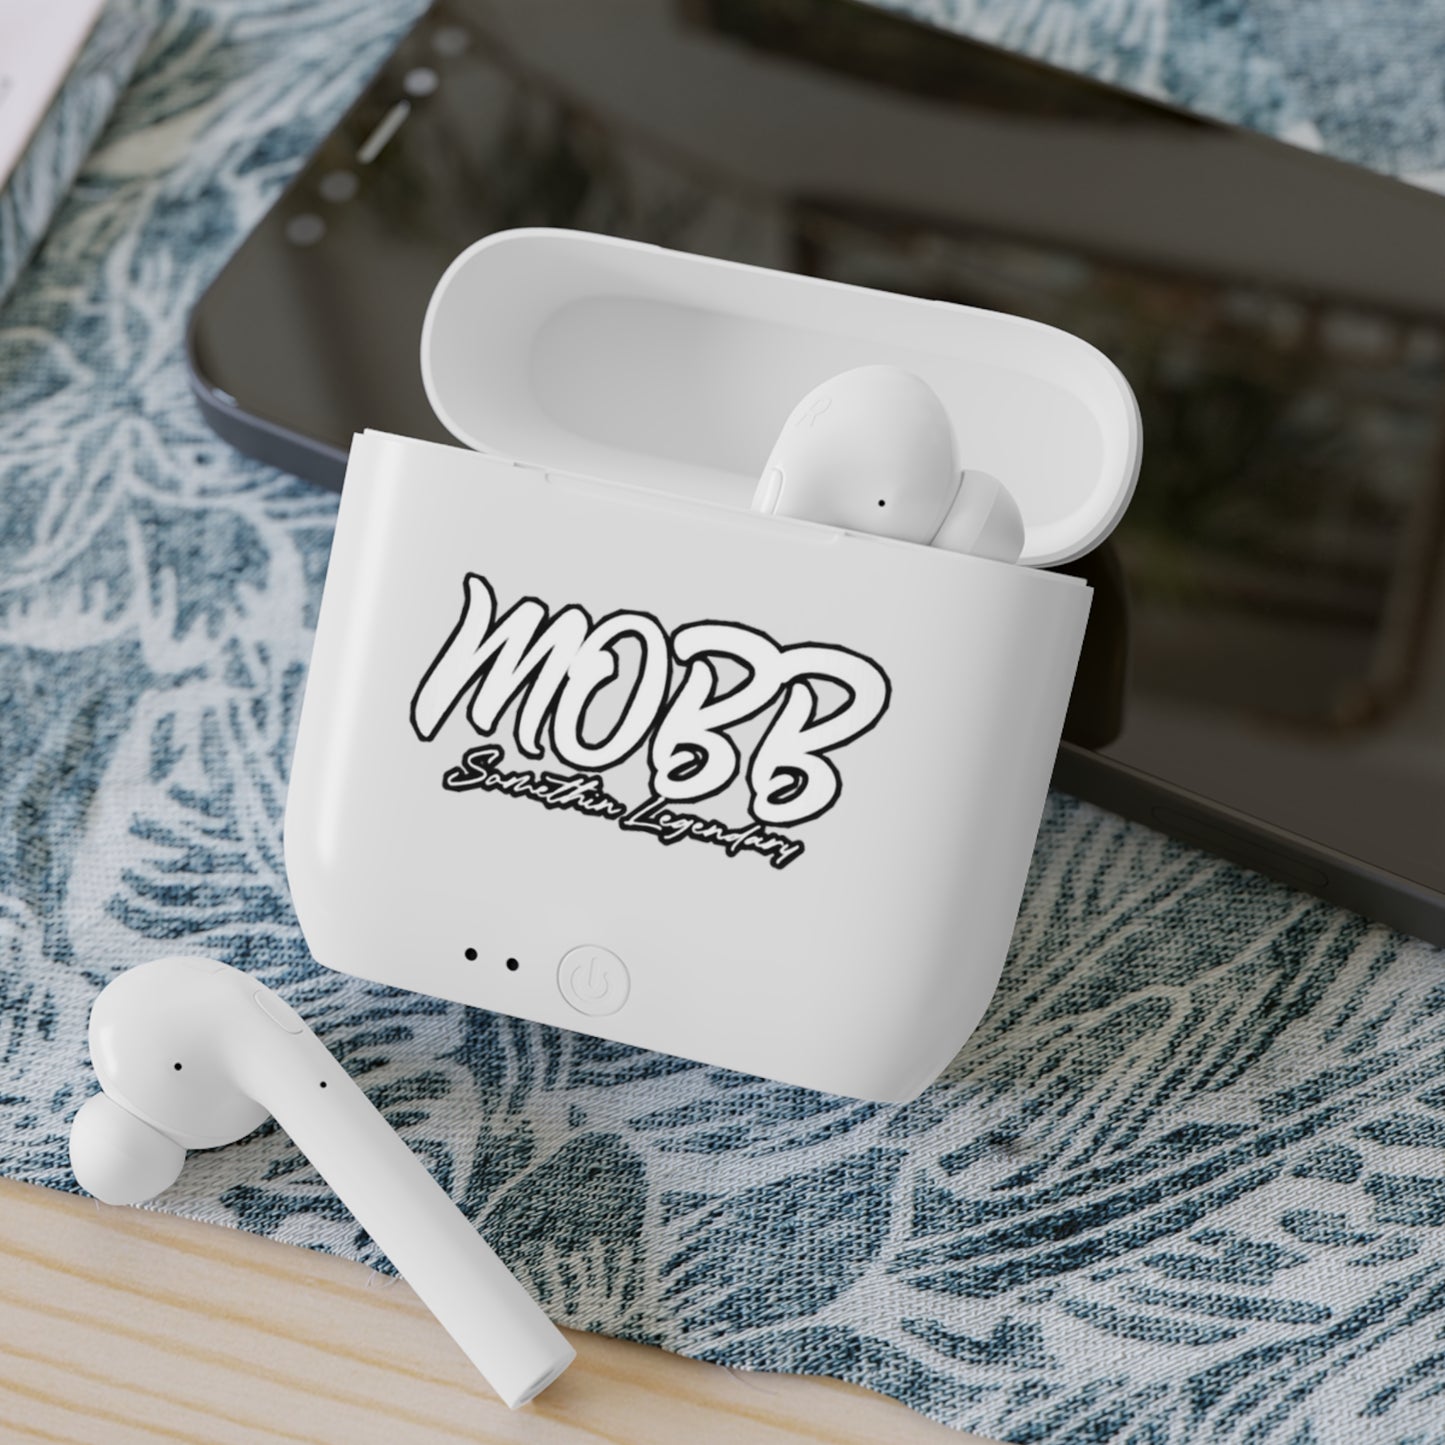 Essos MOBB Wireless Earbuds!